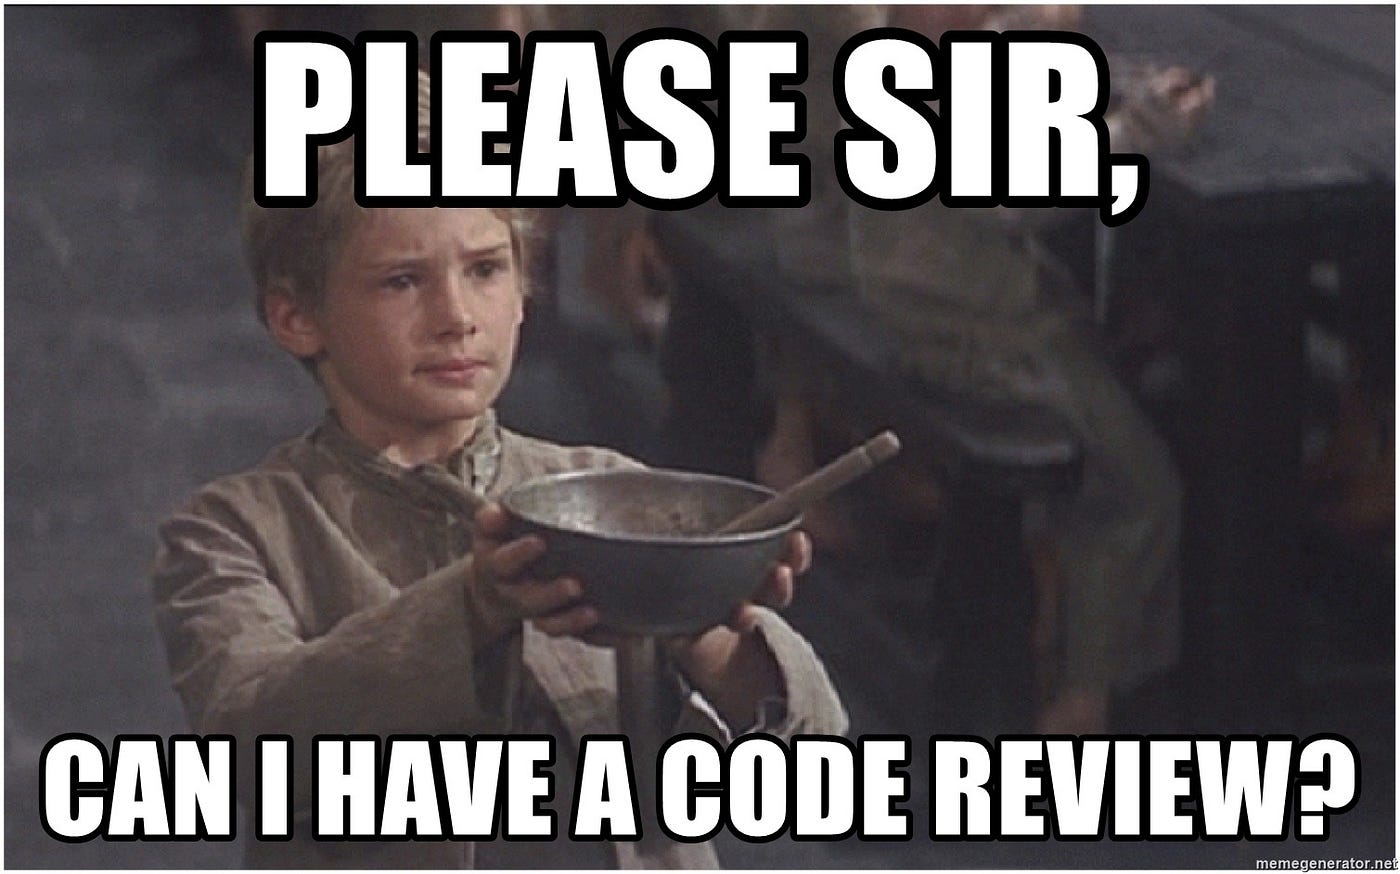 Code review, o mínimo aceitável 